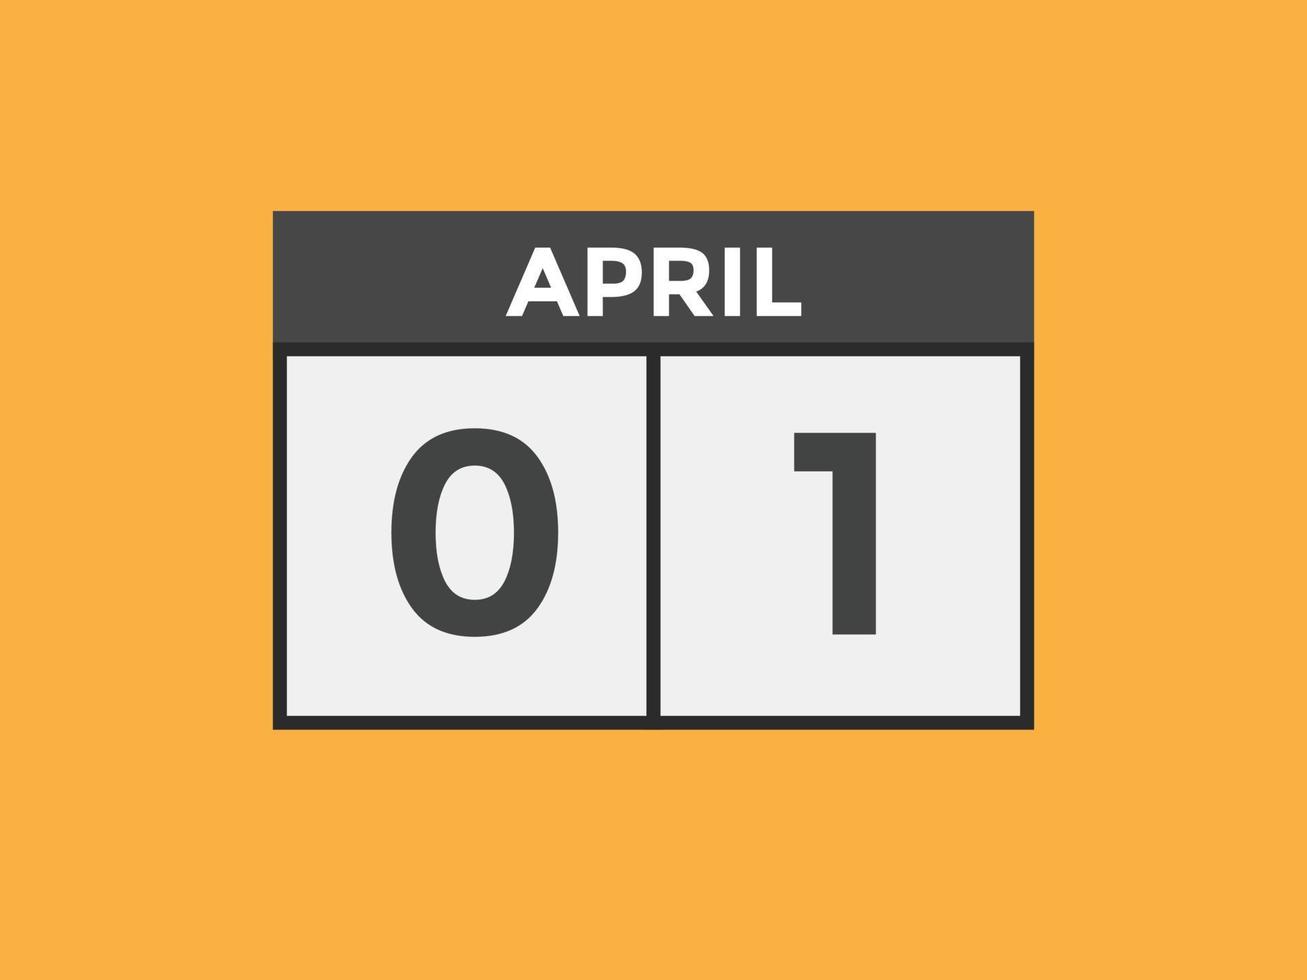 april 1 calendar reminder. 1st april daily calendar icon template. Calendar 1st april icon Design template. Vector illustration